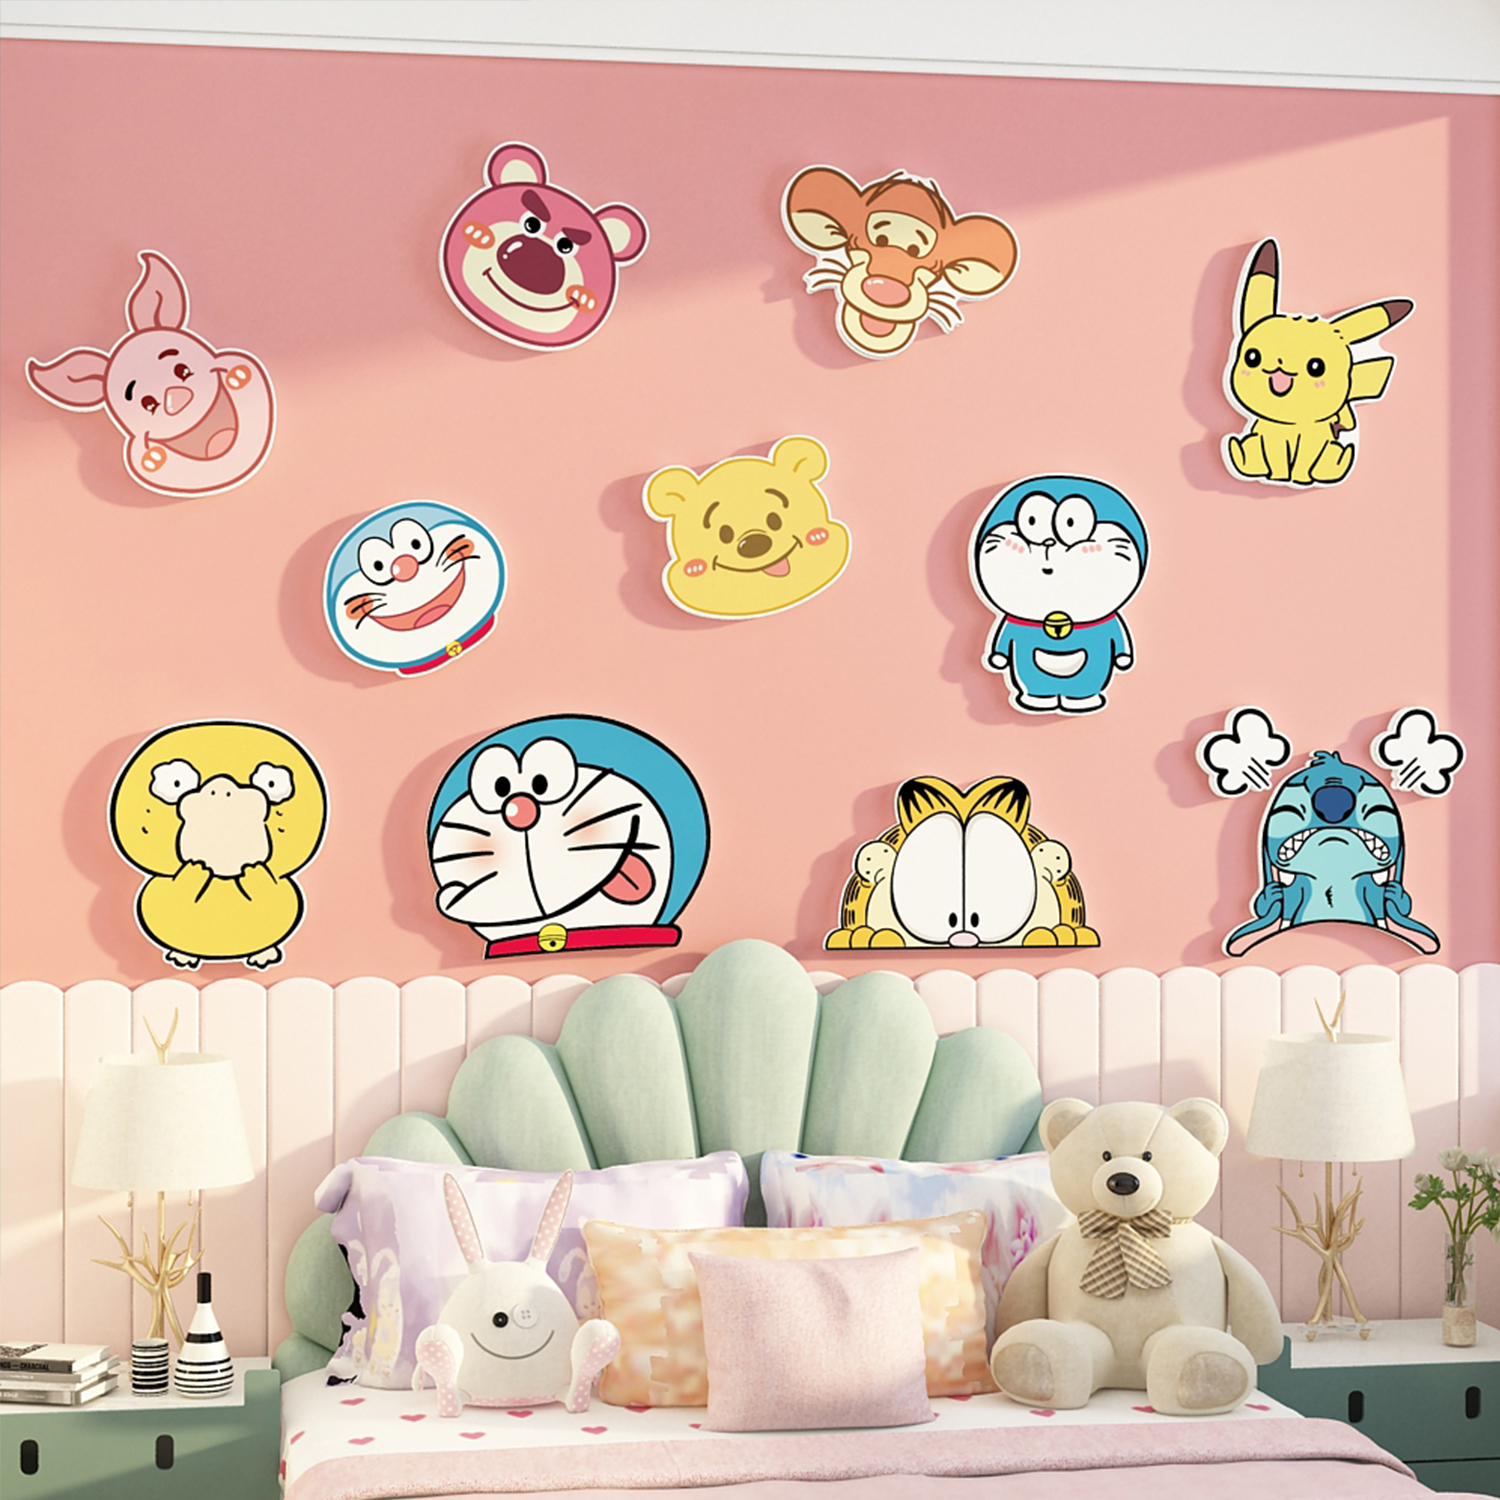 网红儿童房间布置墙面装饰改造用品公主卧室女孩床头卡通壁画背景